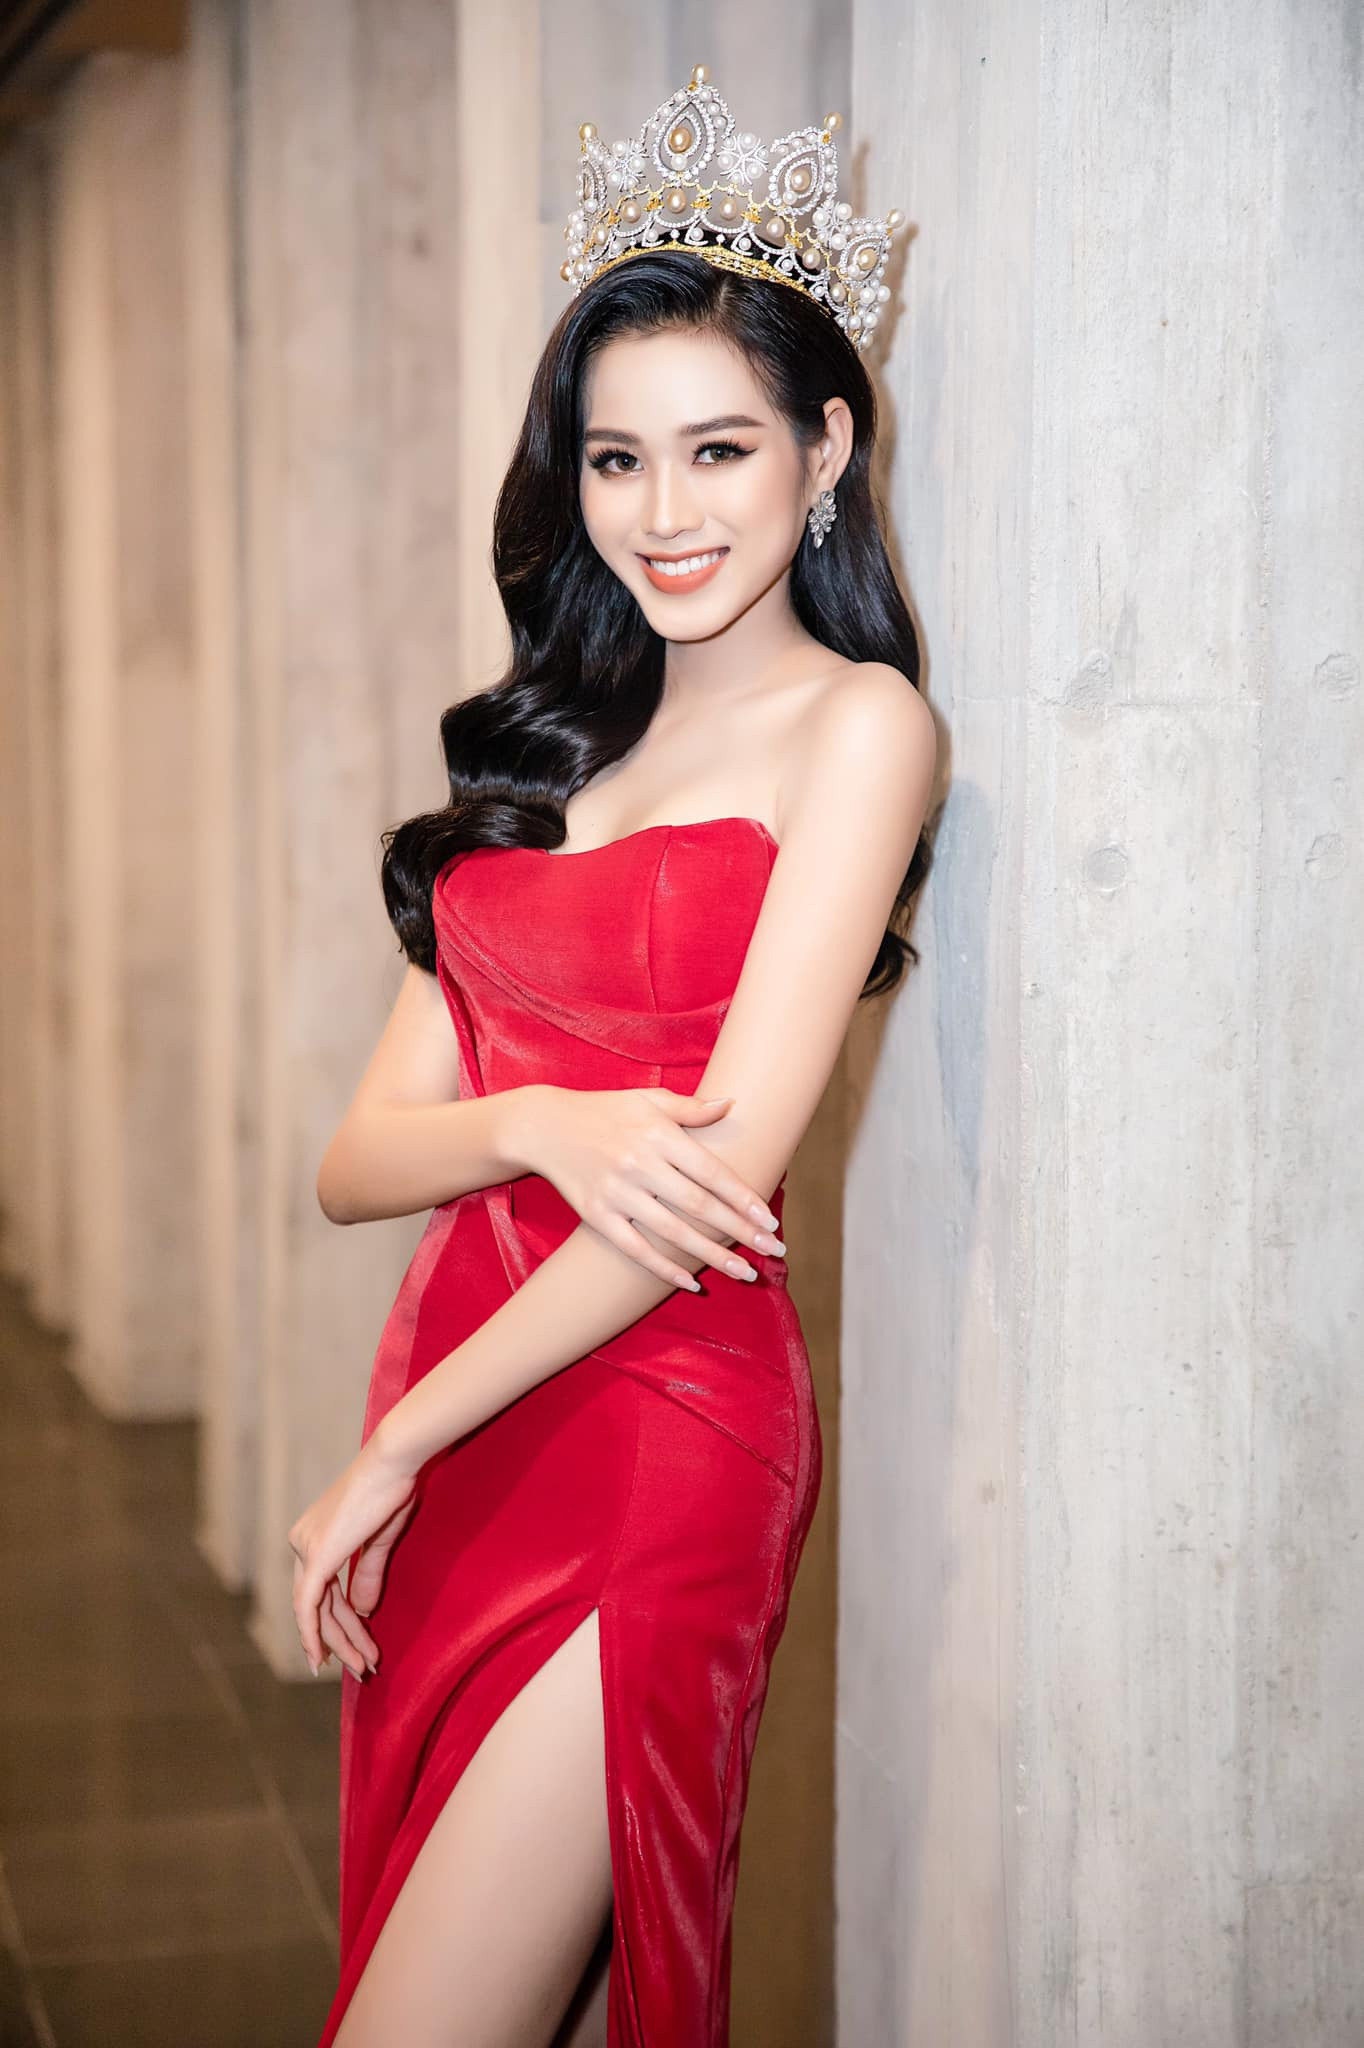 Trước đó, Đỗ Hà được chú ý khi đăng quang Hoa hậu Việt Nam và được trang fanpage Miss World, chuyên trang sắc đẹp Missosology chúc mừng chiến thắng.